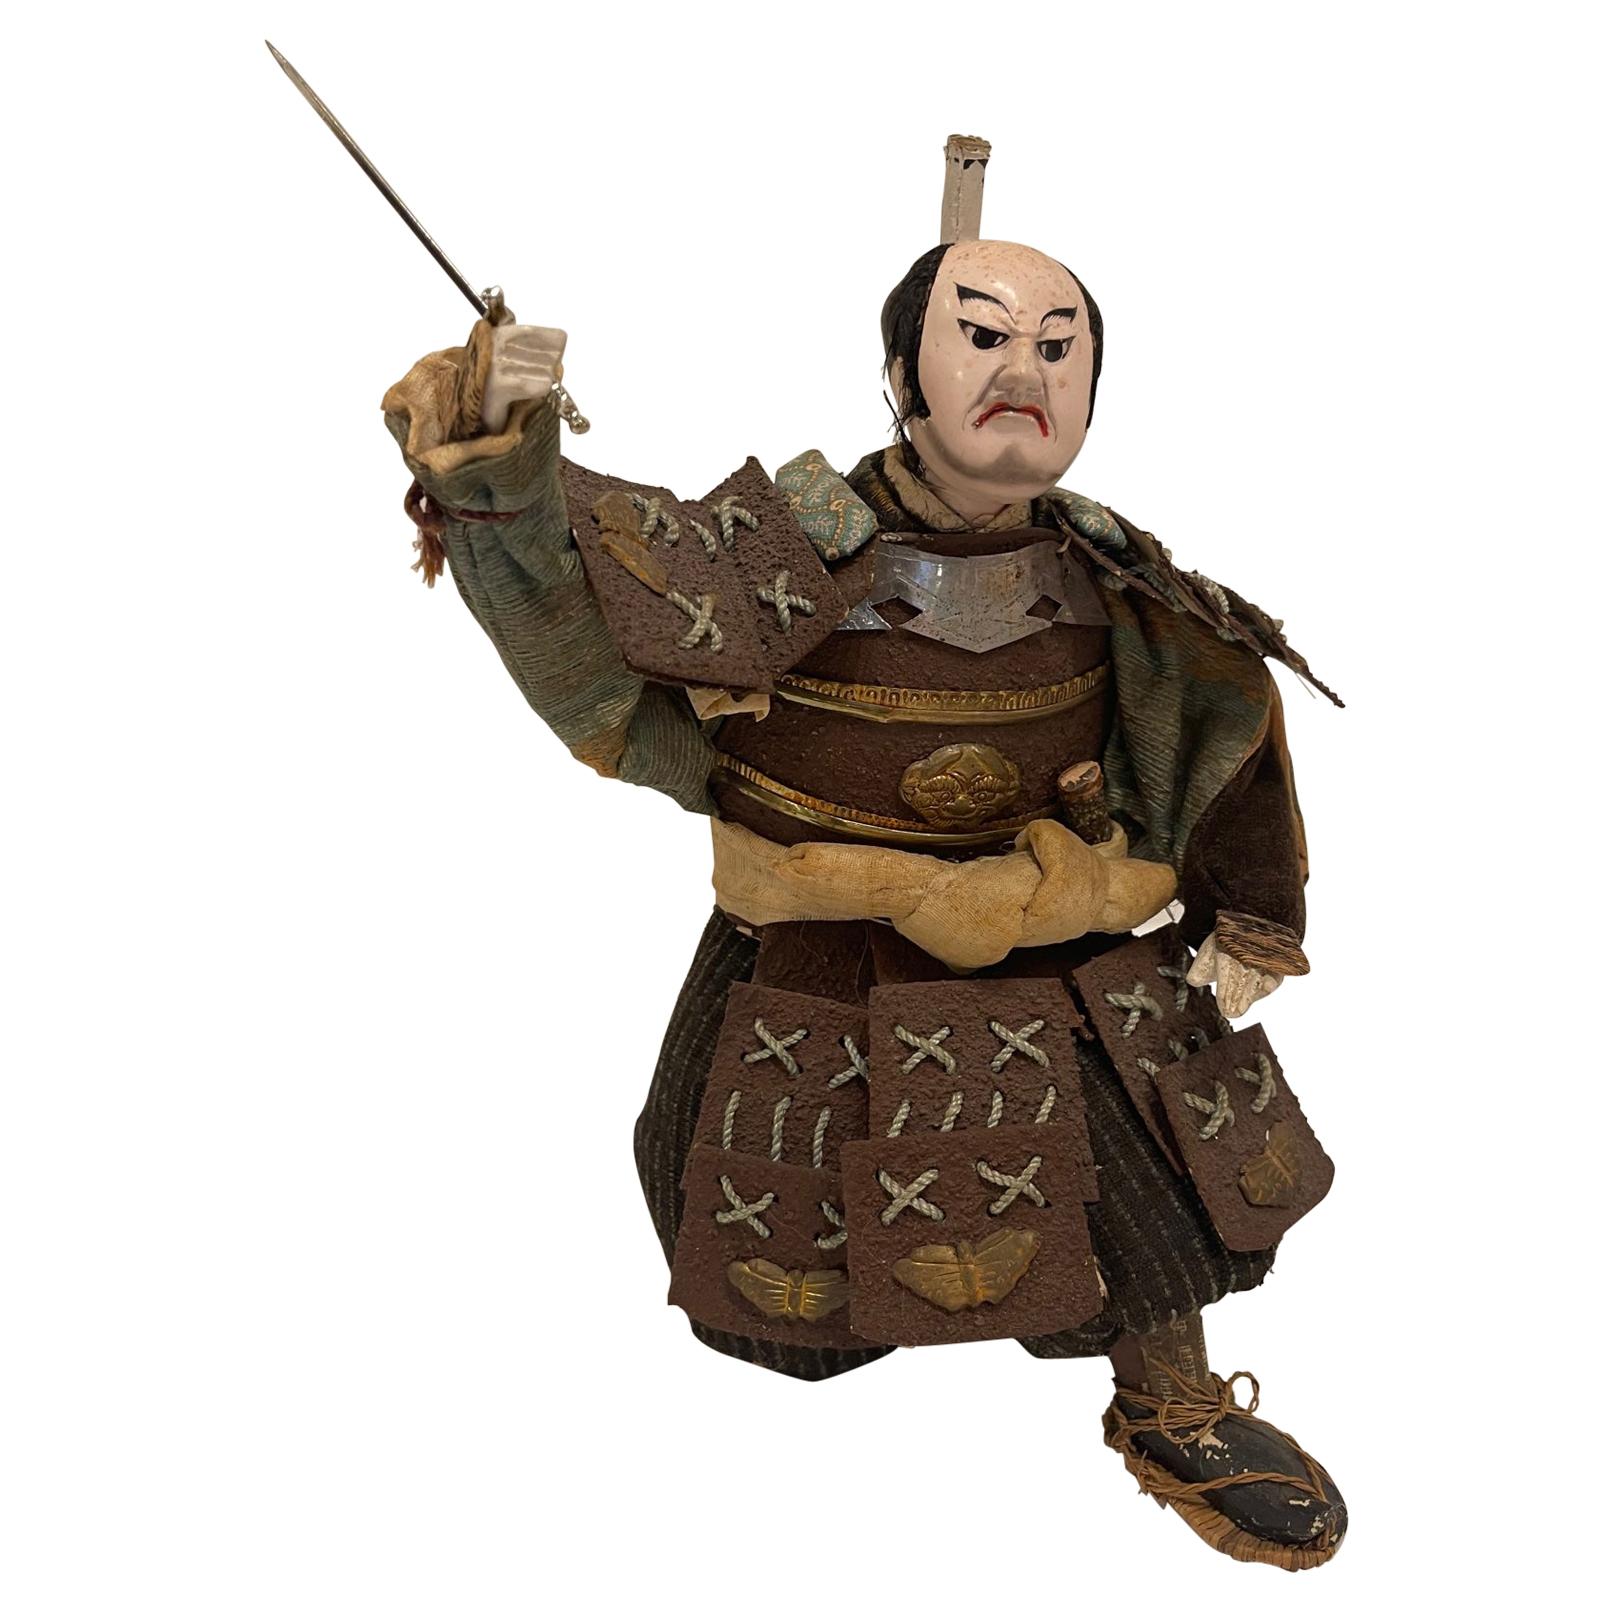 Antiker japanischer knienden Samurai-Krieger aus der Meiji-Periode, ca. 1870-1880